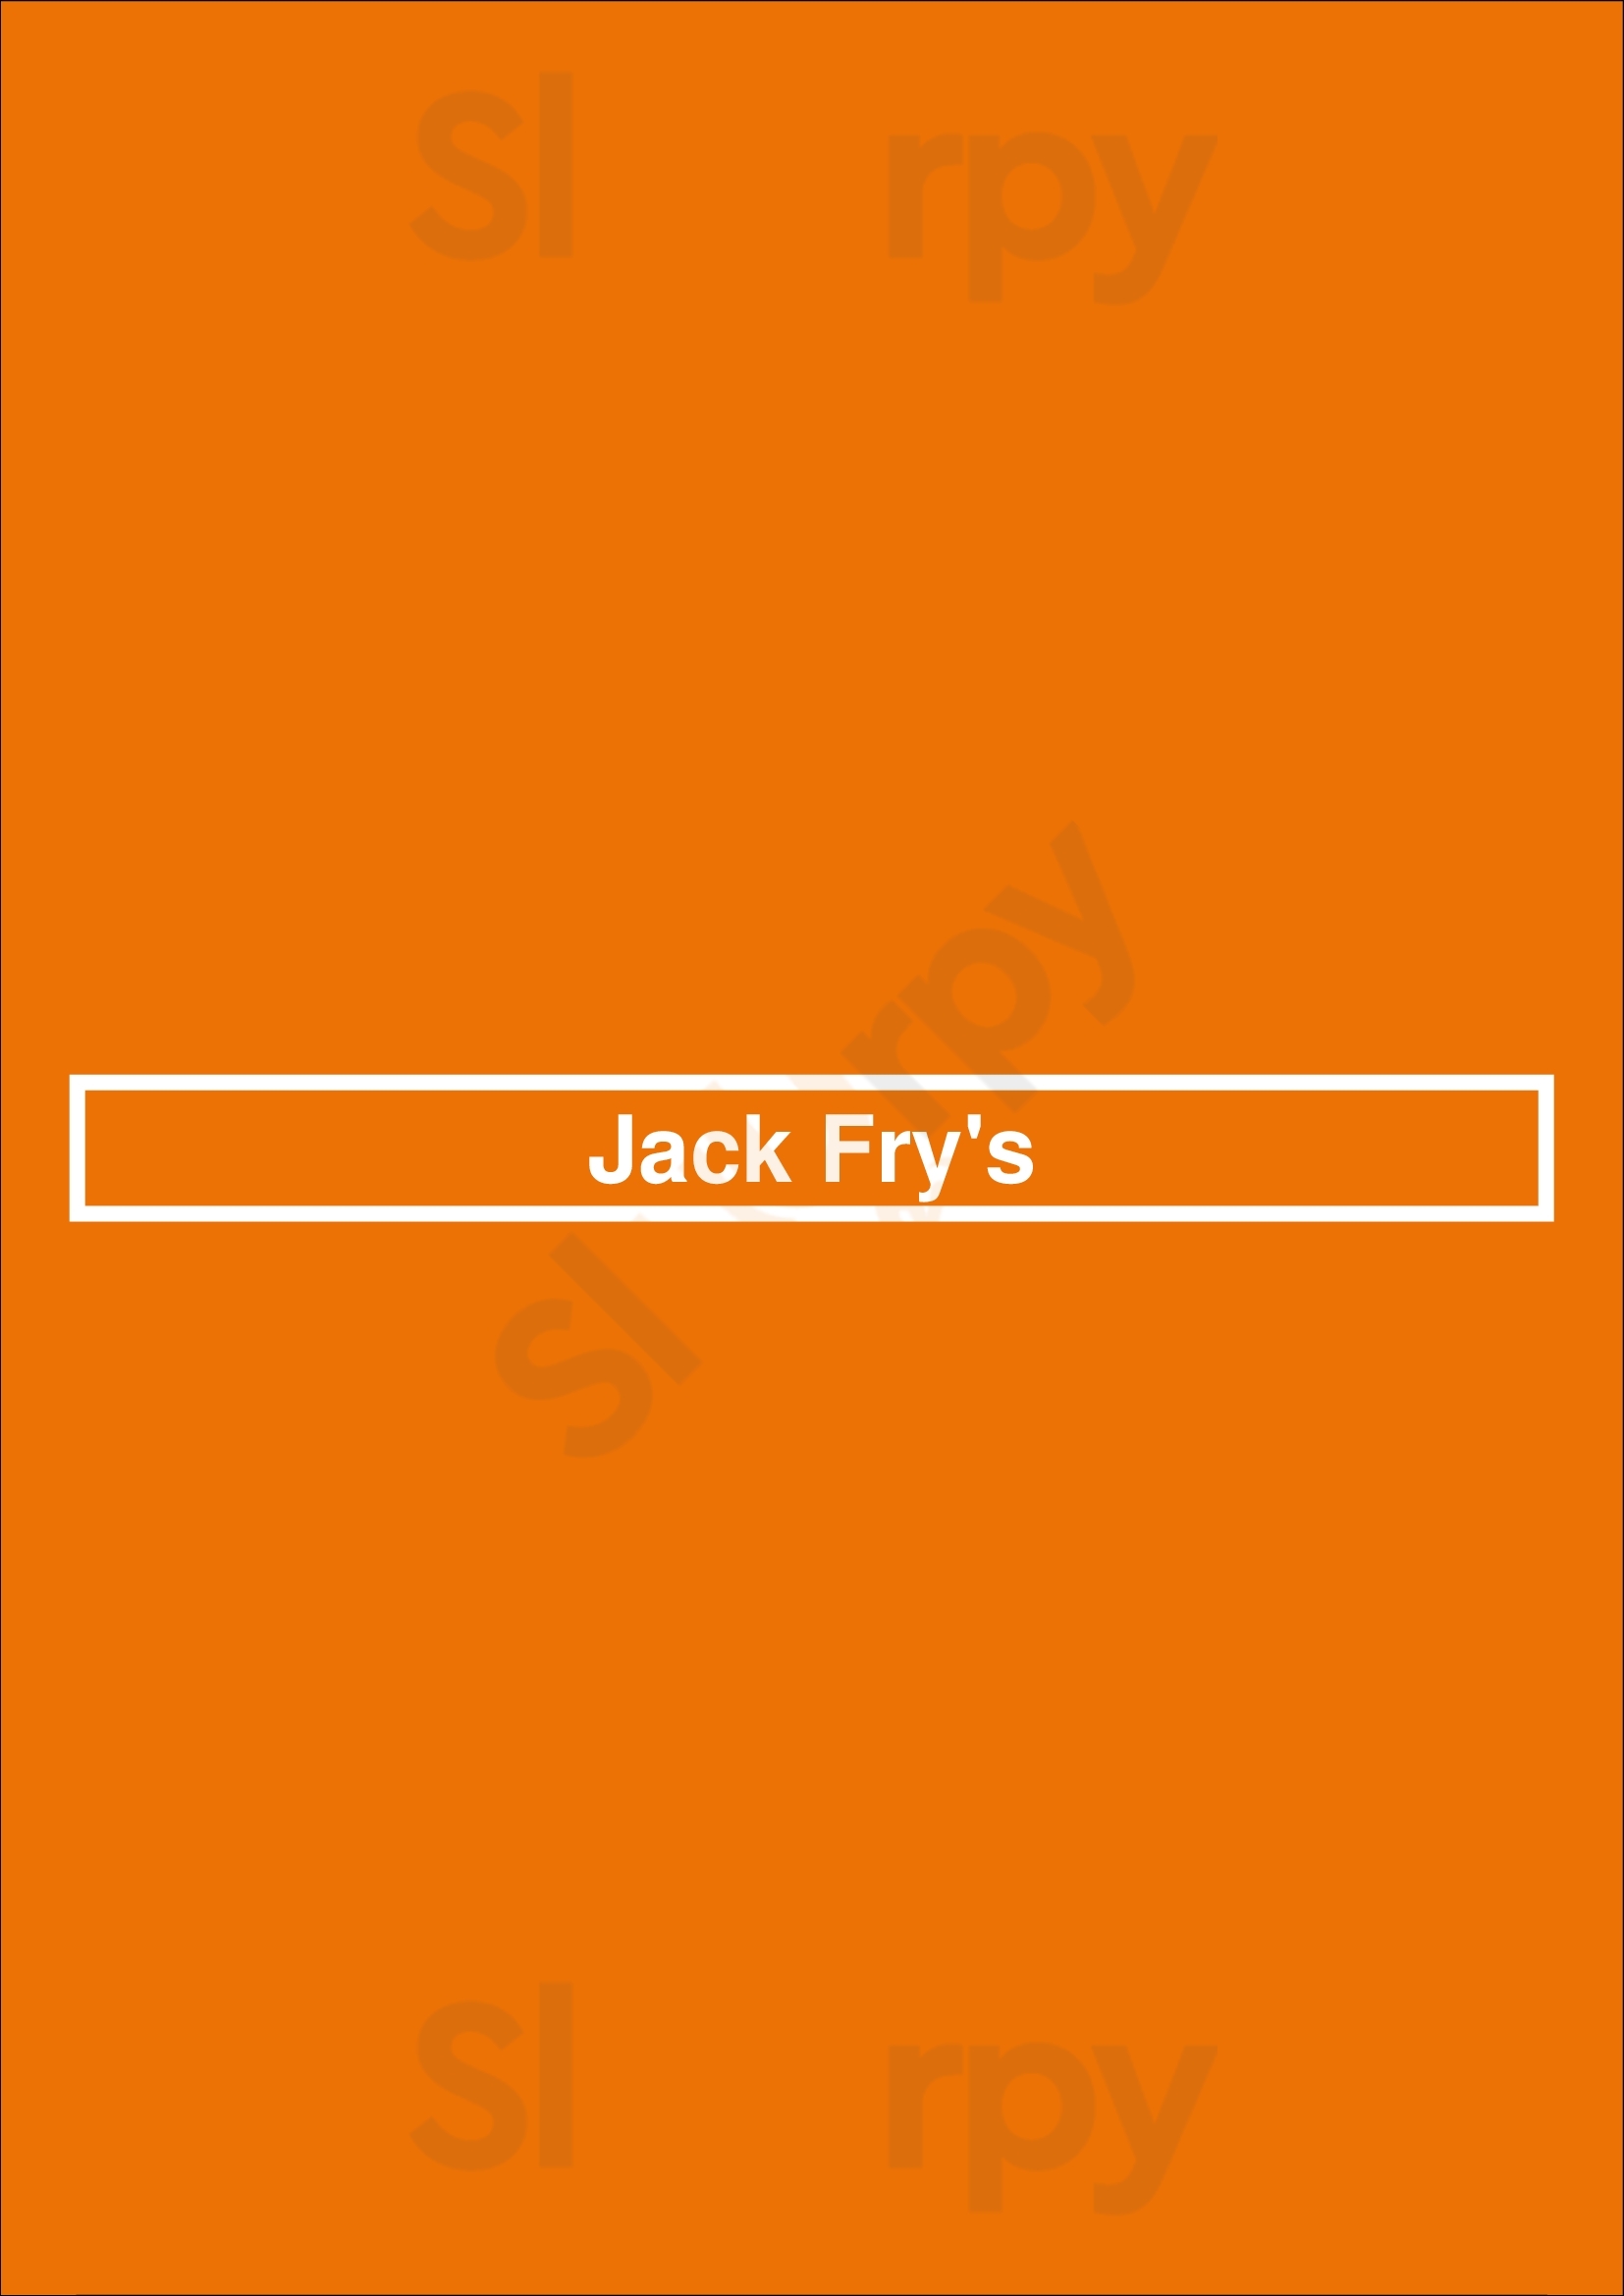 Jack Fry's Louisville Menu - 1